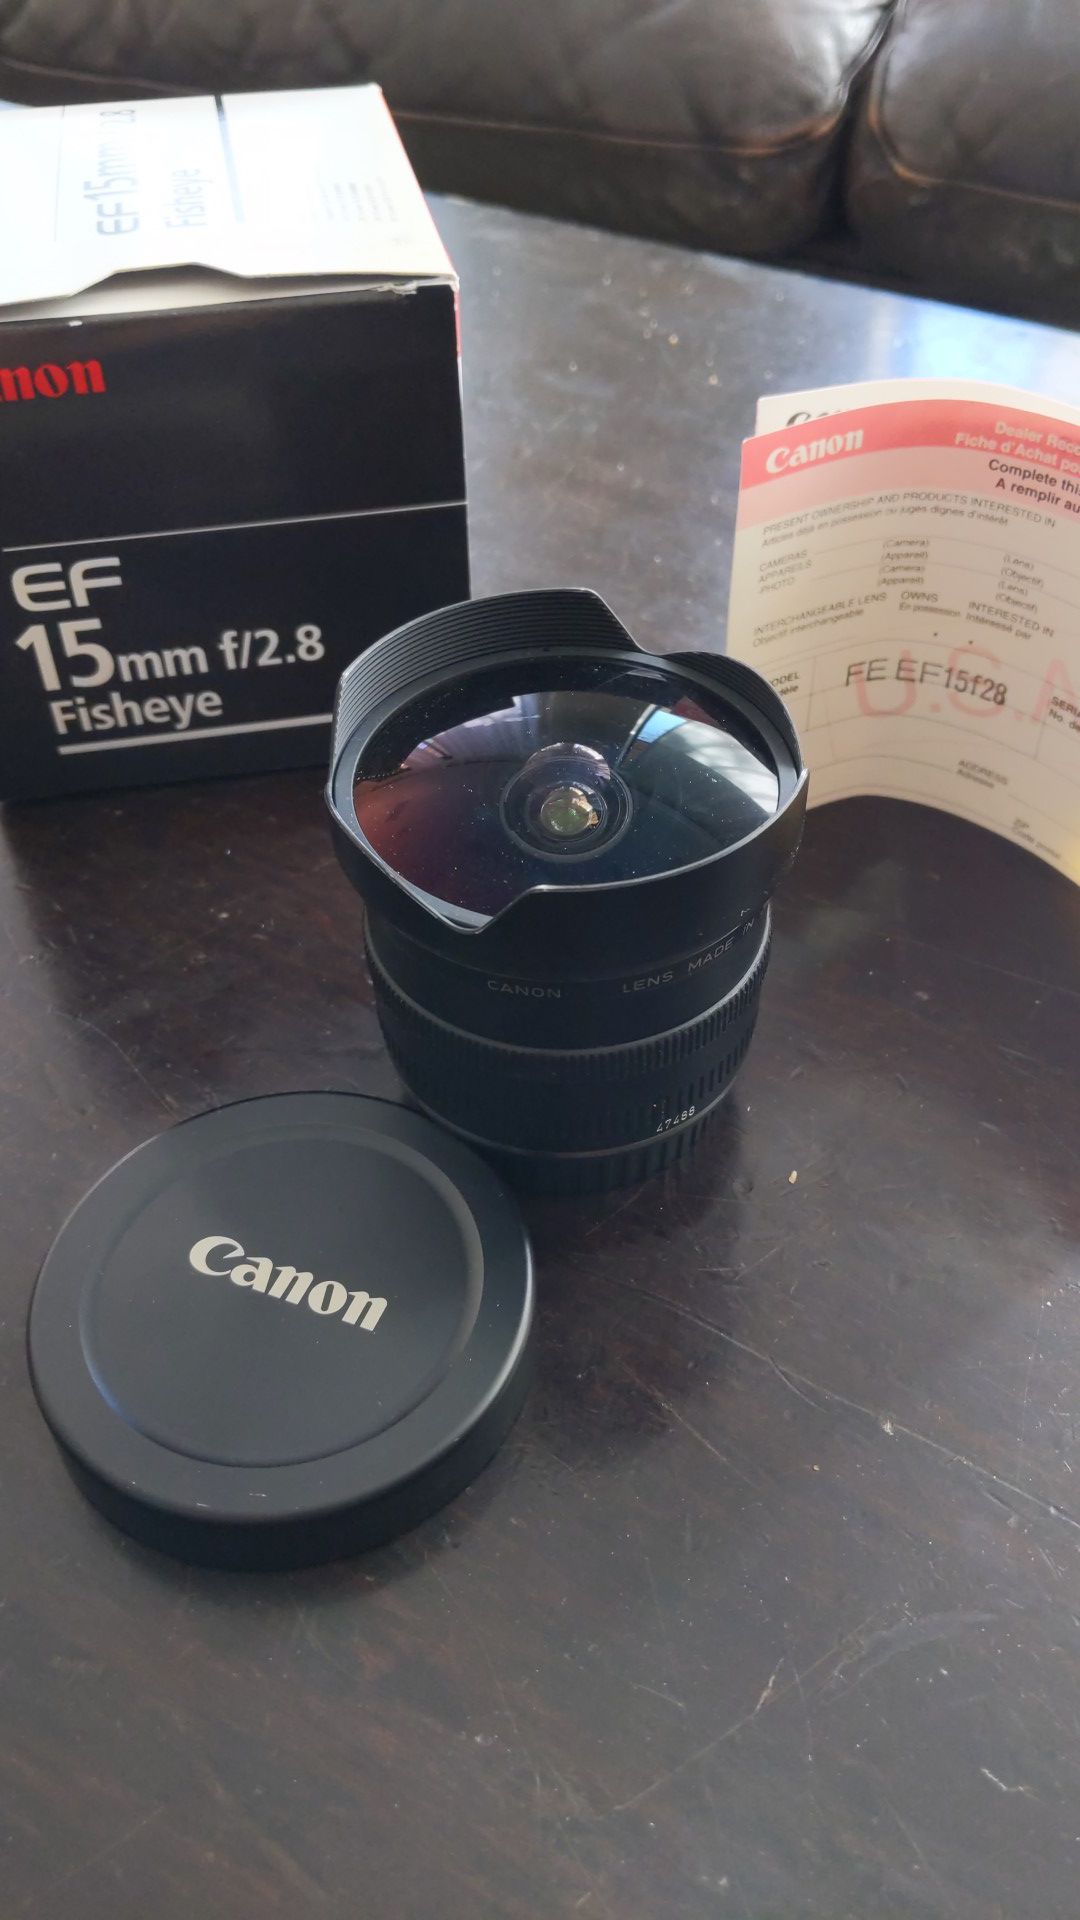 Canon FE EF15f28 15mm fish eye lens f2.8 Eos